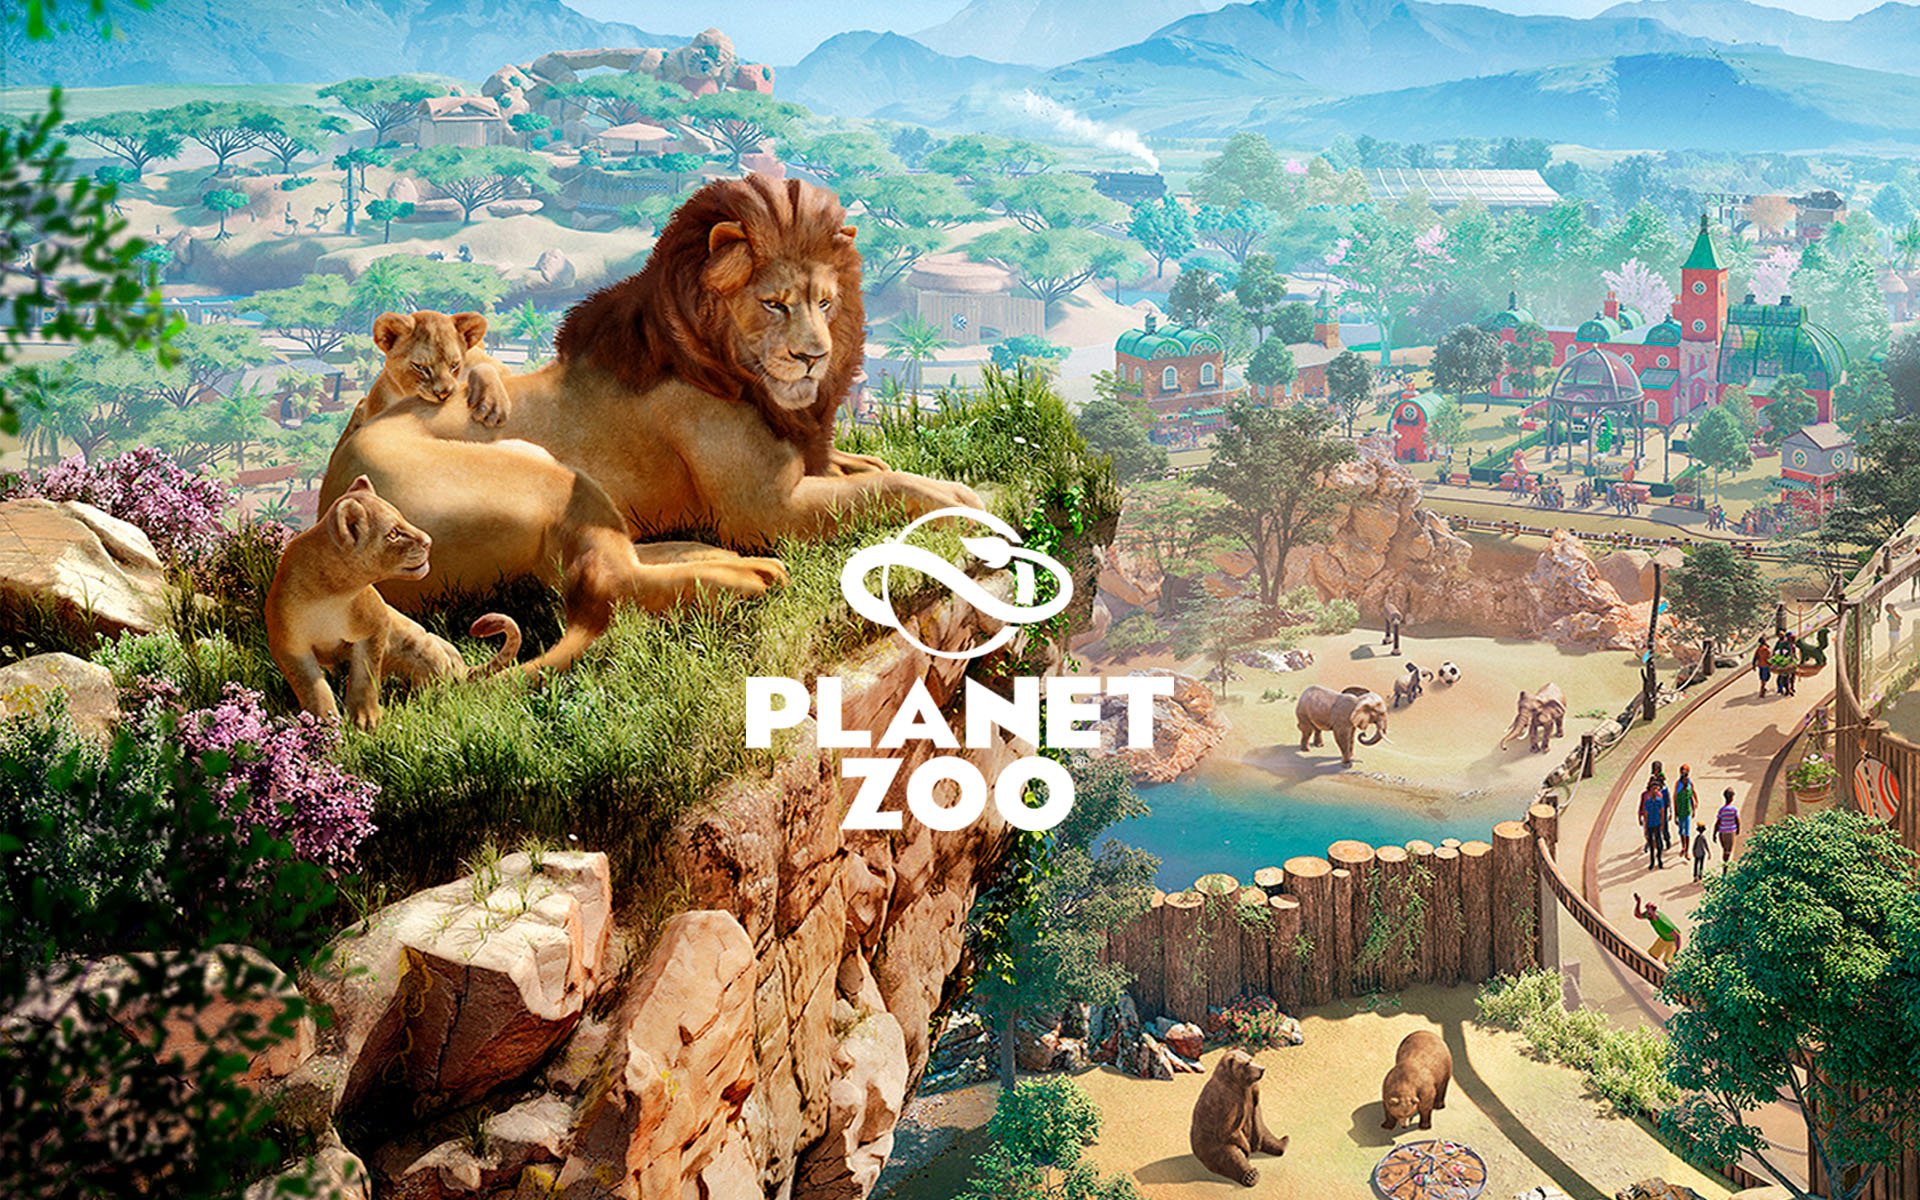 Compre Planet Zoo a partir de R$ 100.00